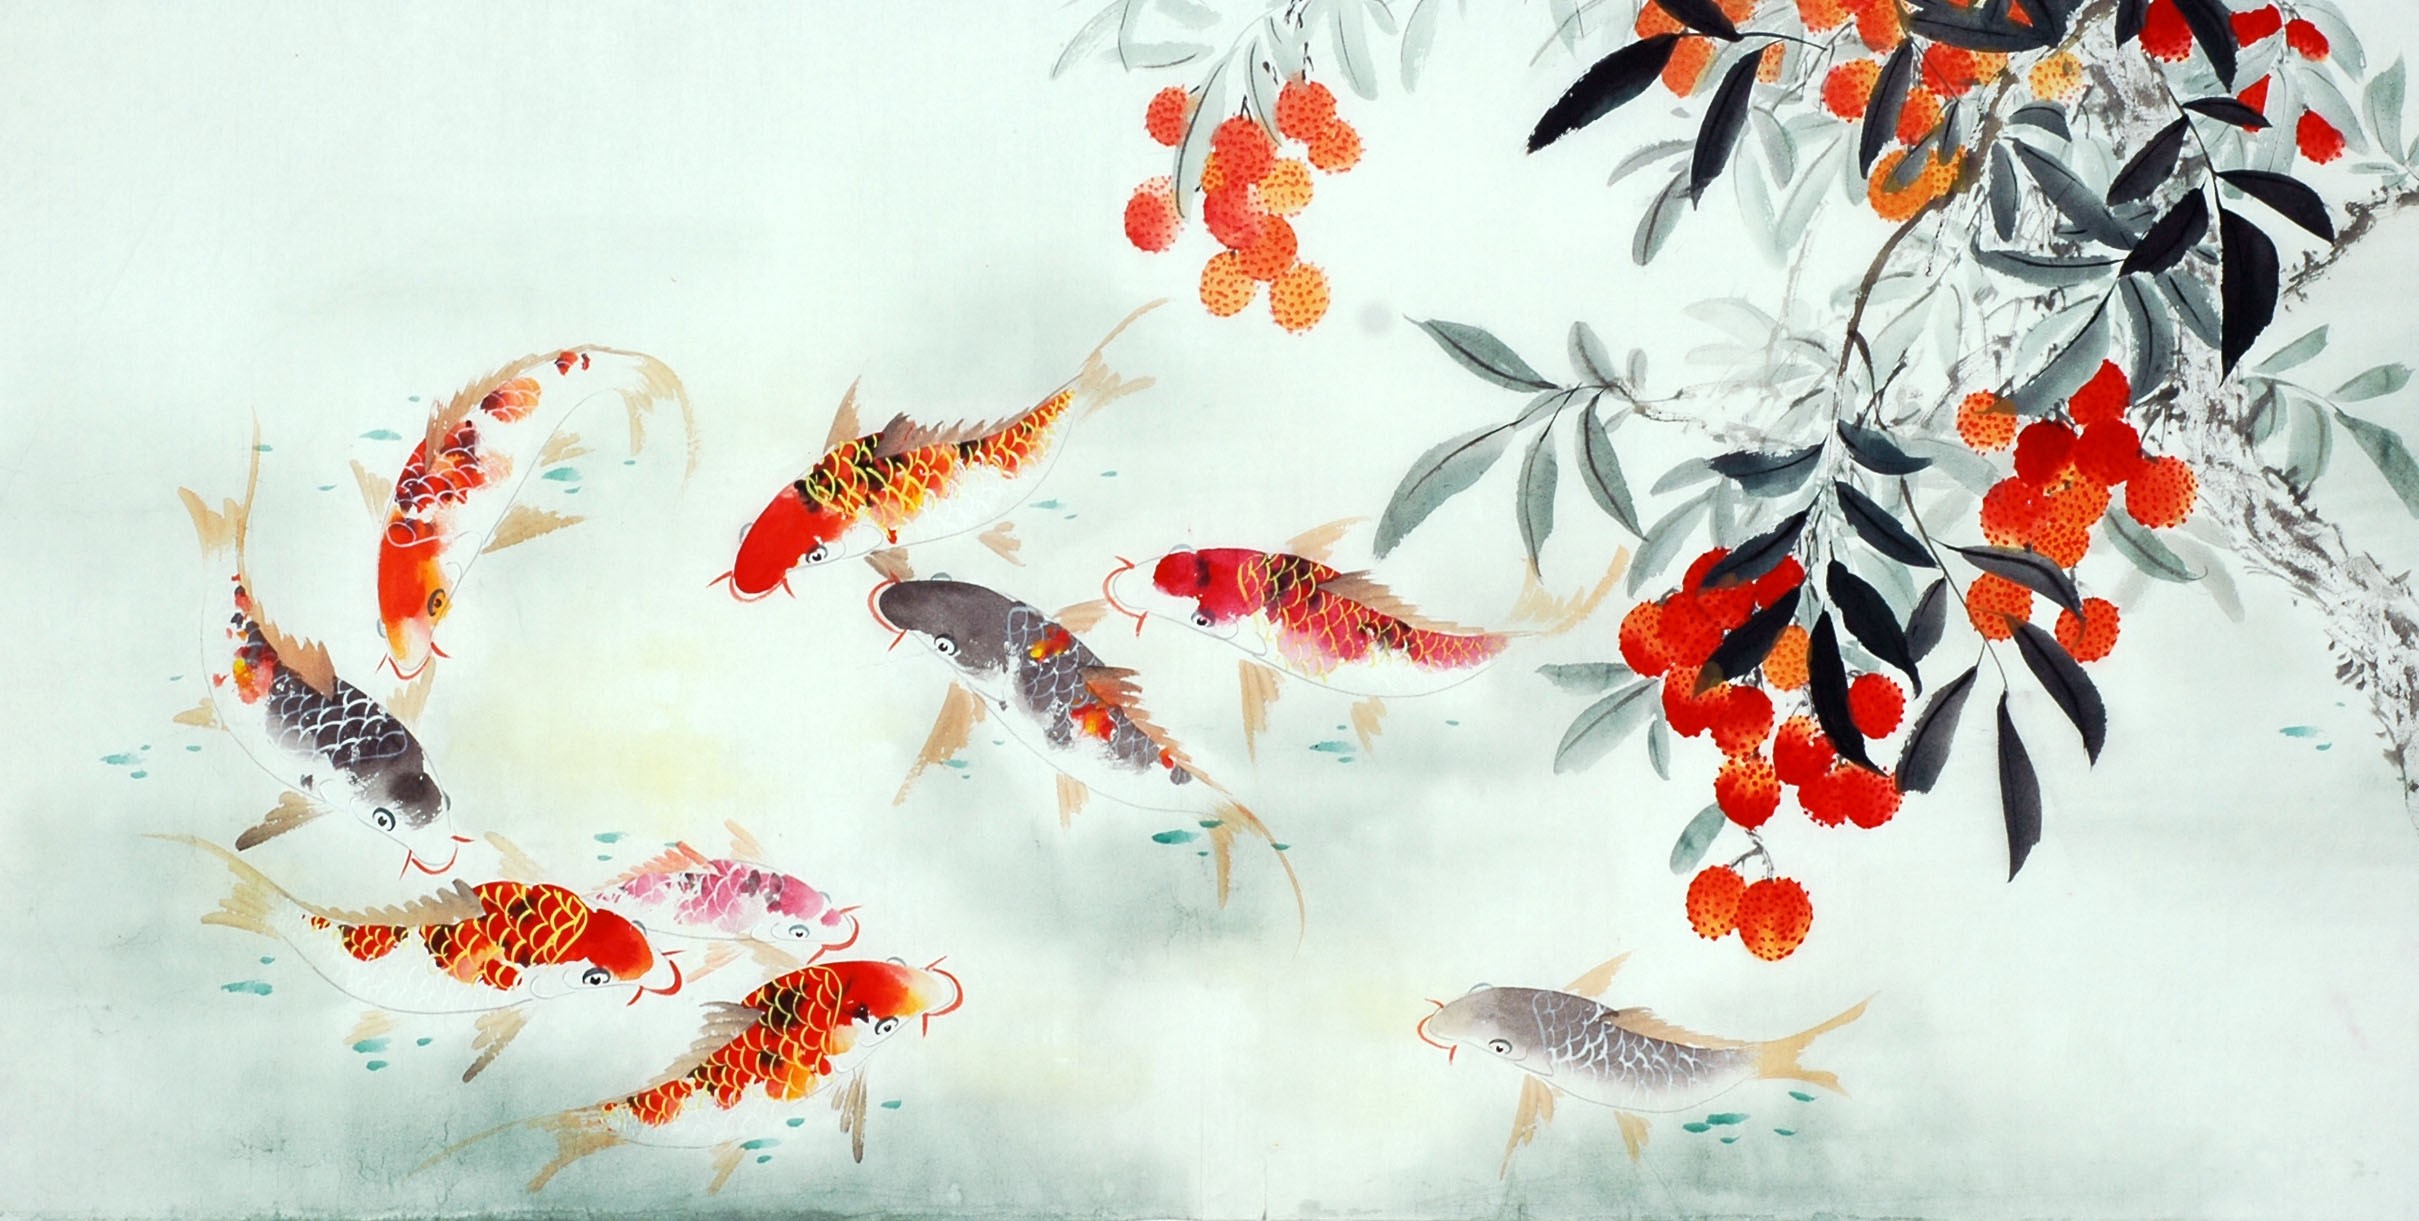 Chinese Carp Painting - CNAG011402